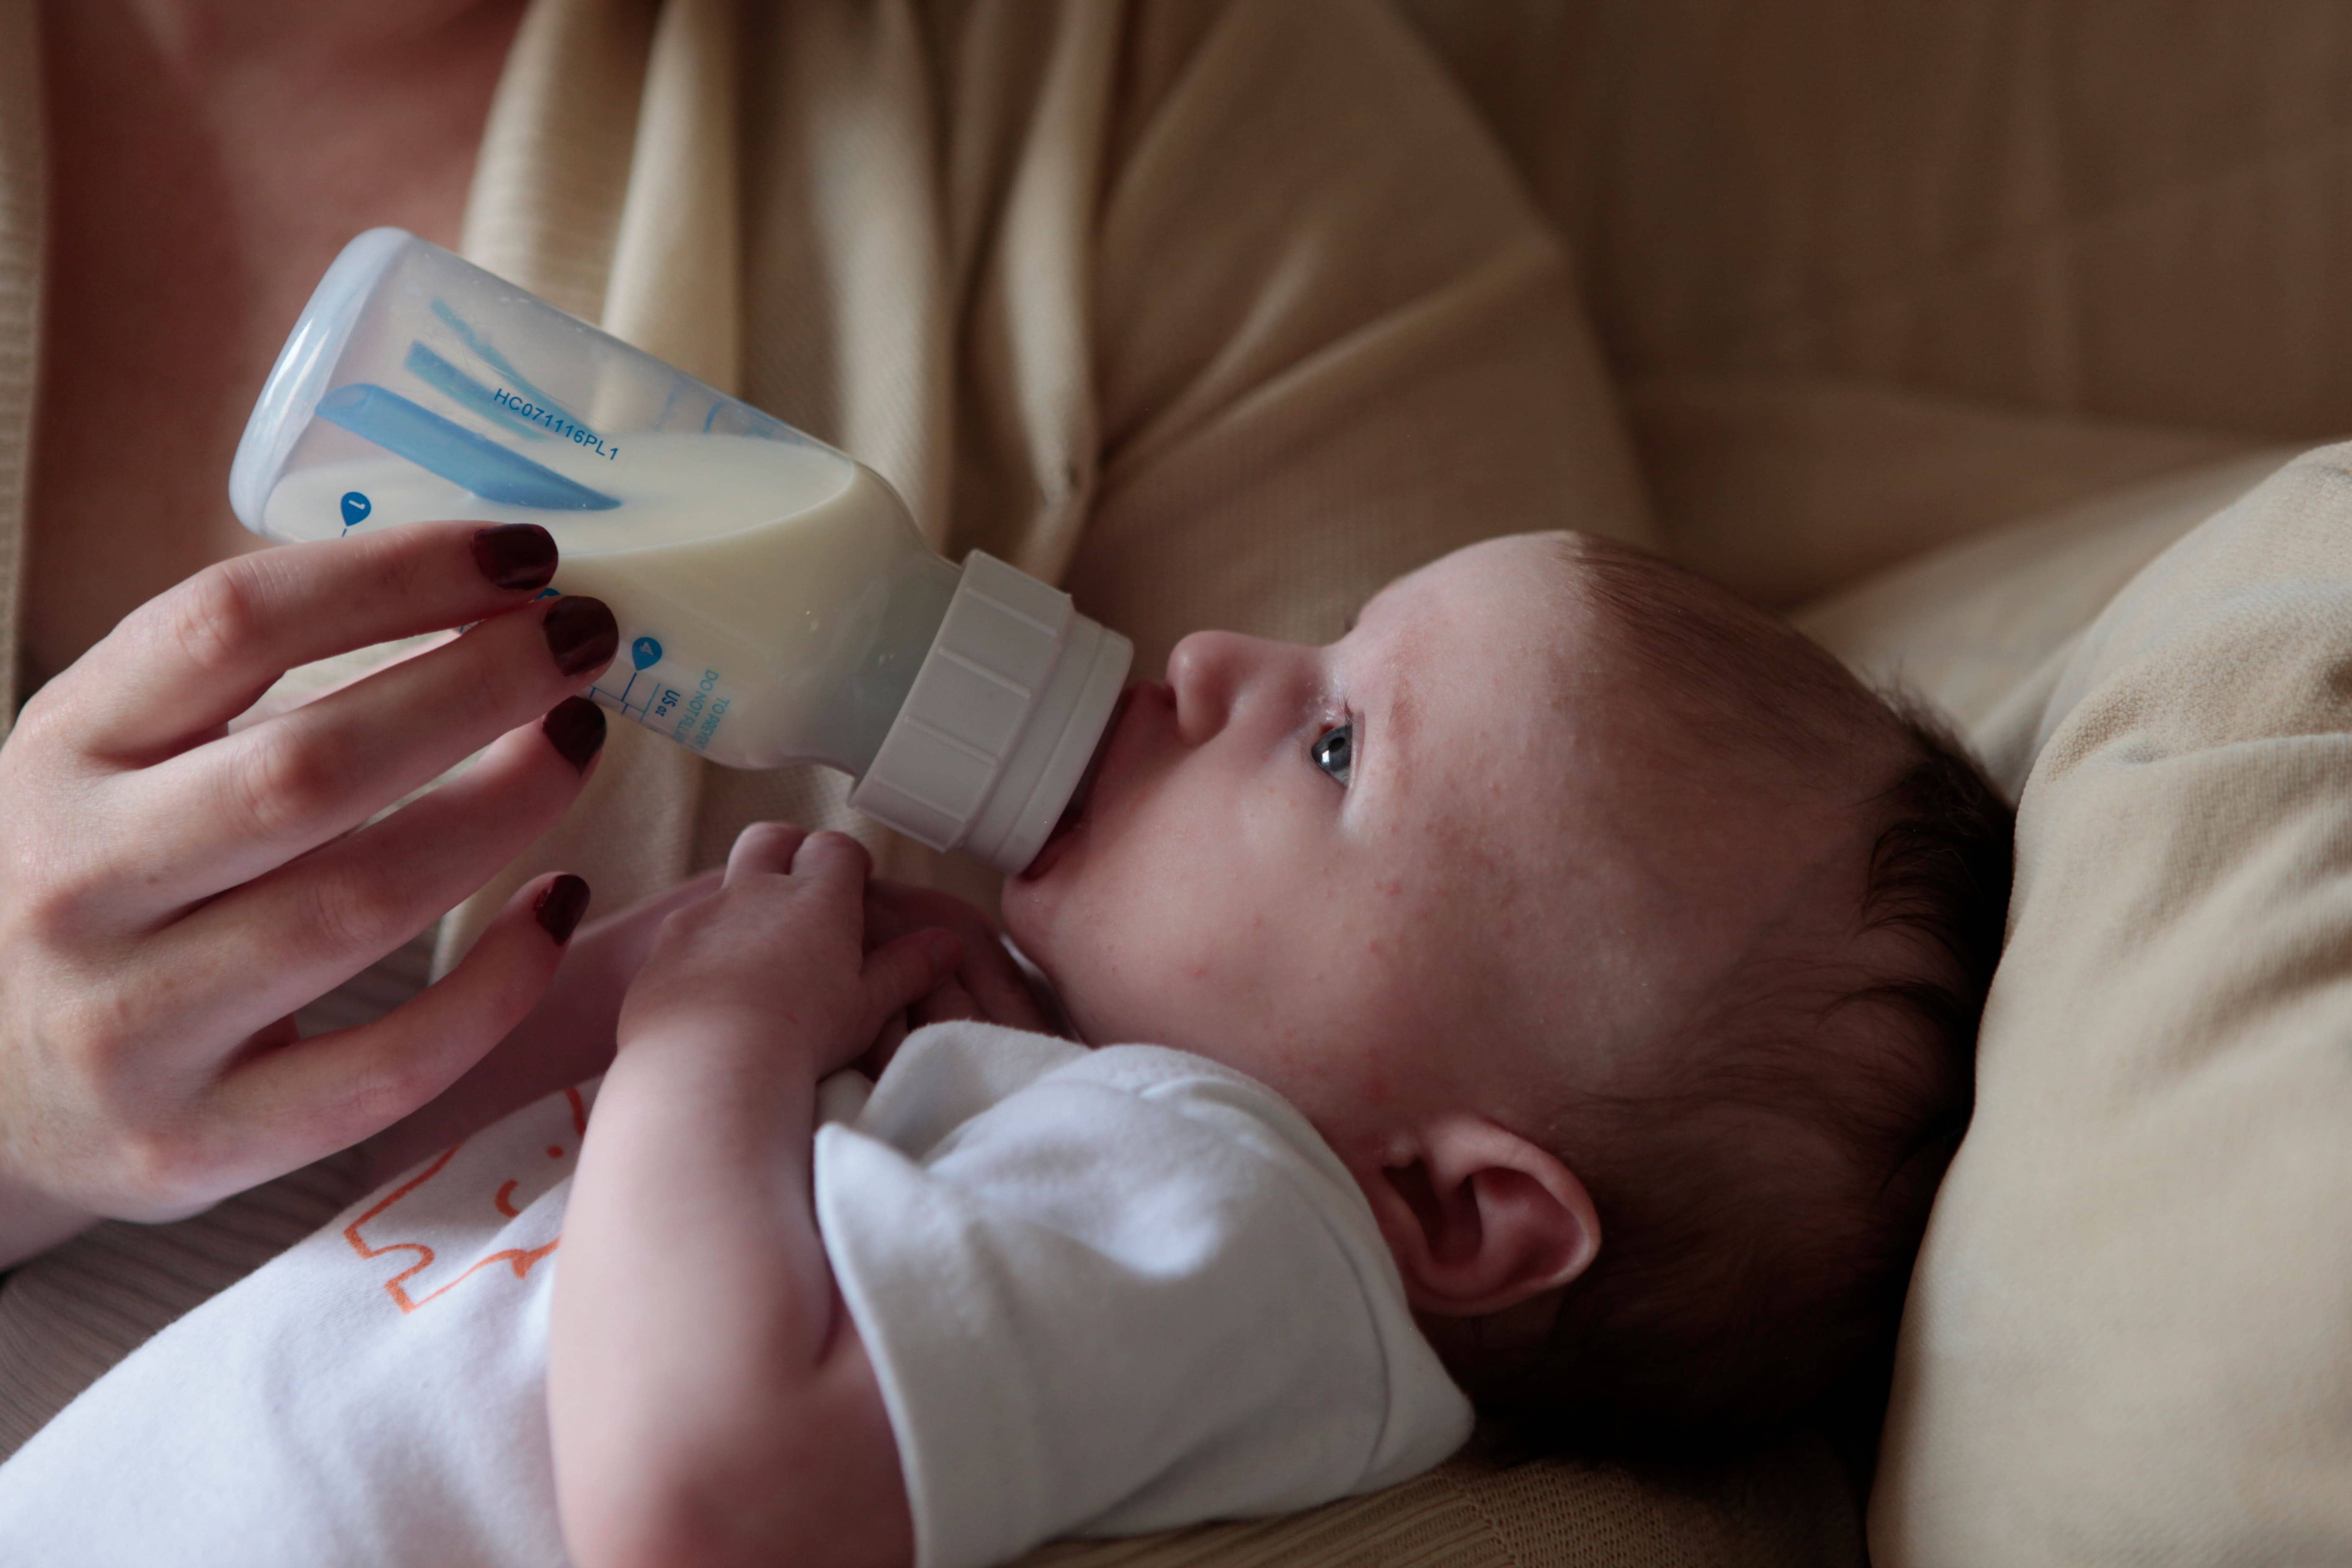 doação de leite materno